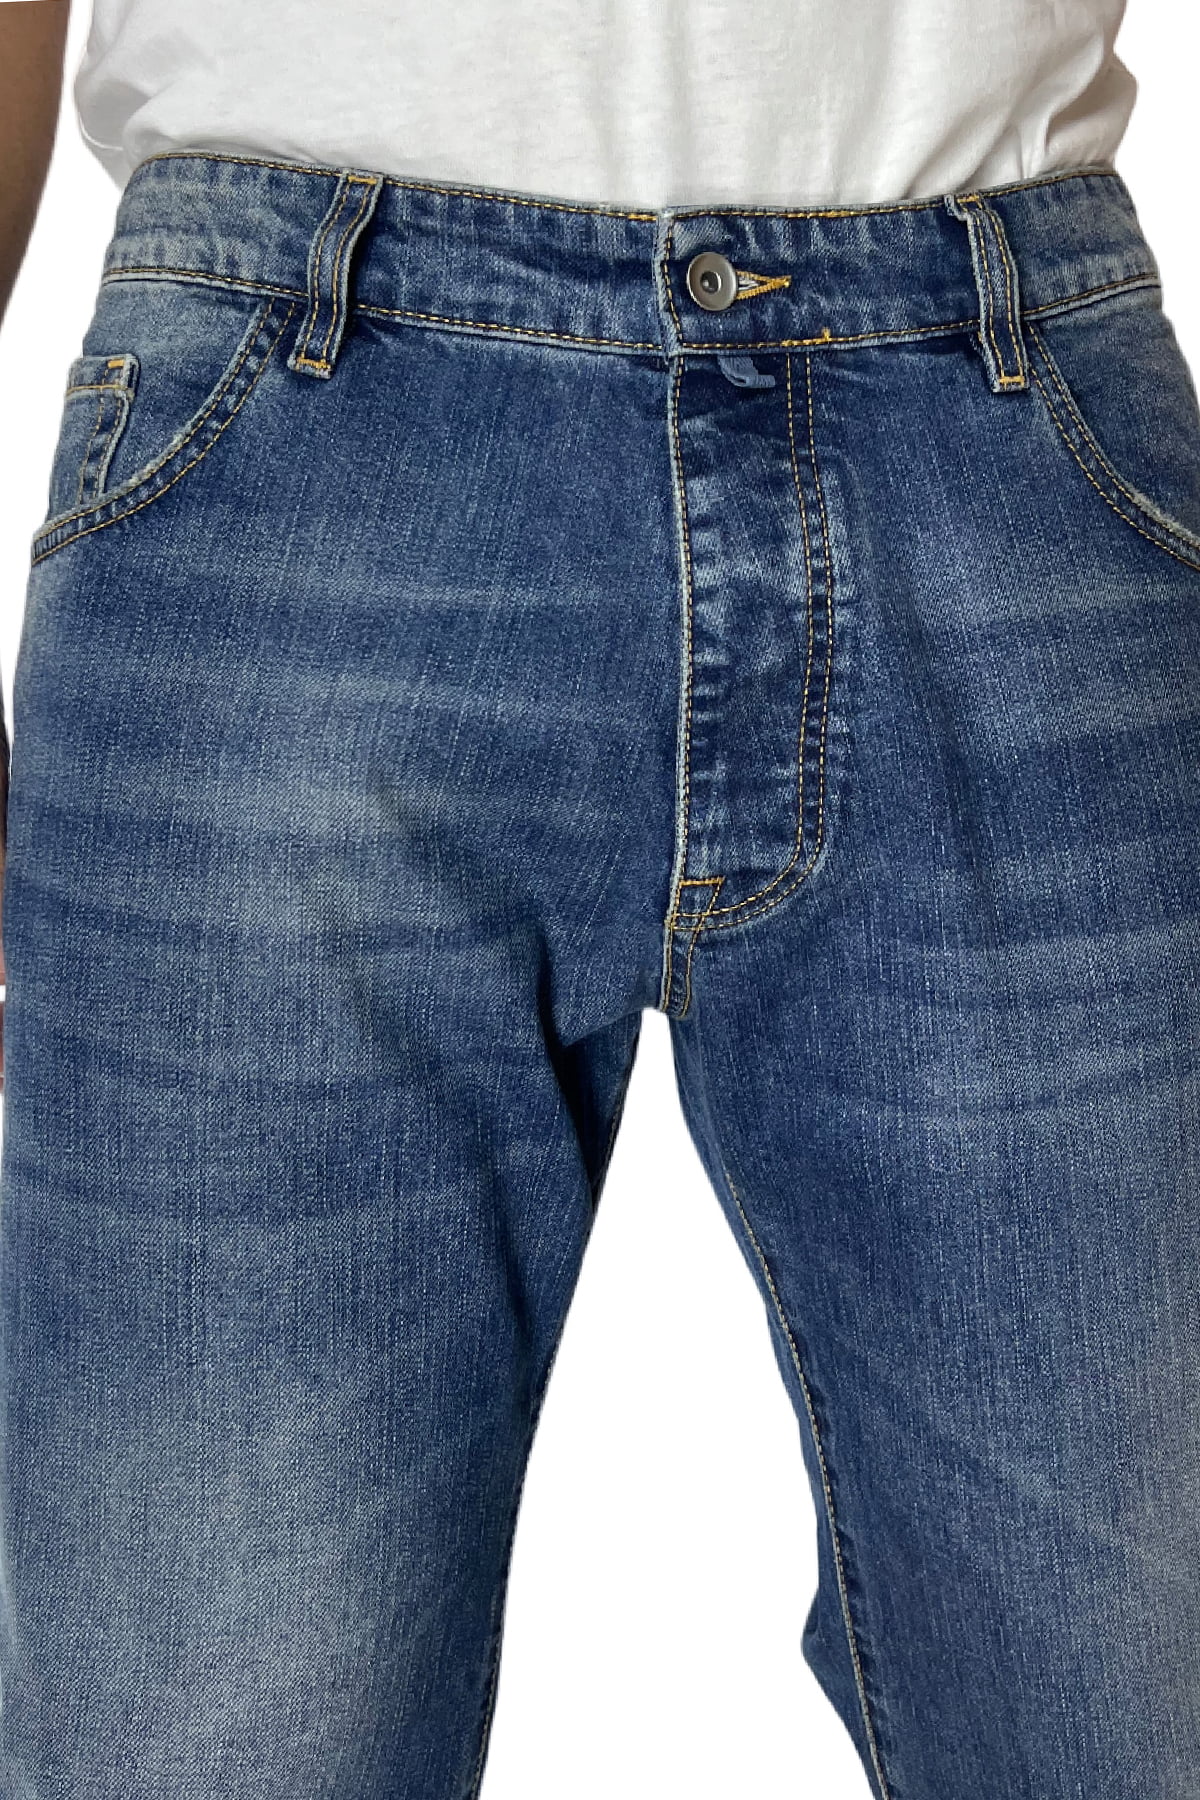 Jeans da uomo con sfumature beige modello 5 tasche regular fit made in italy